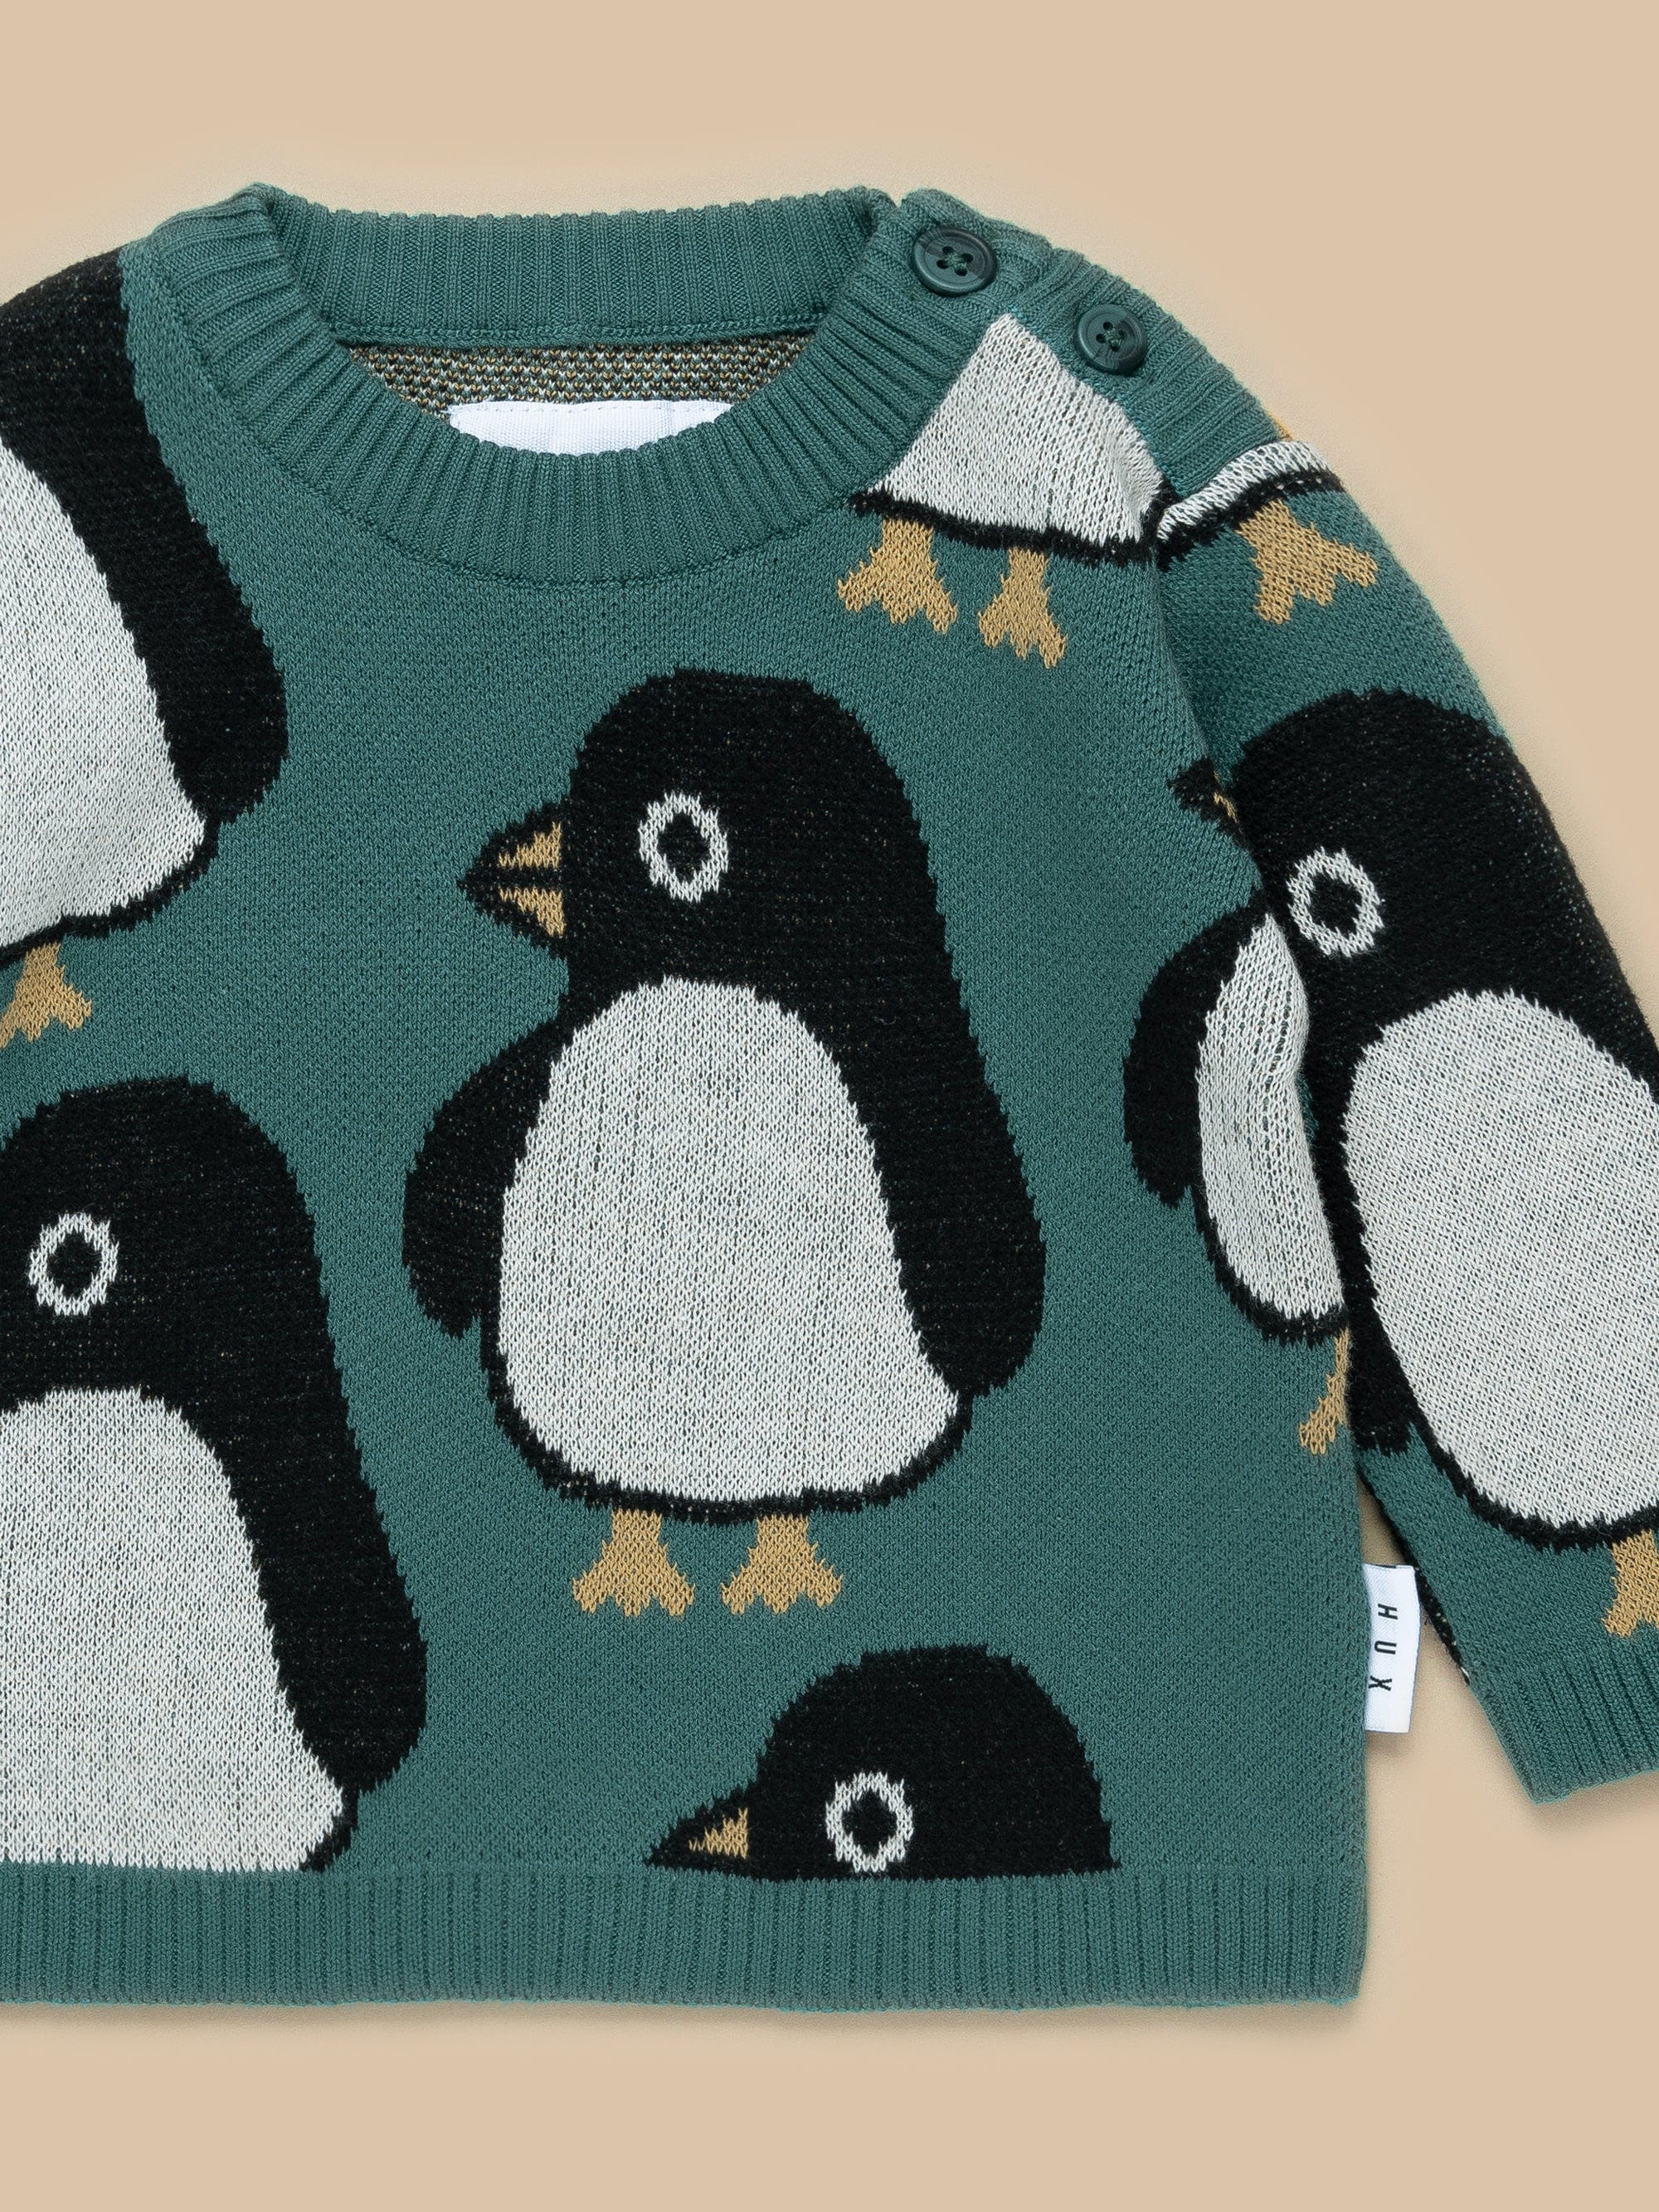 Penguin Knit Jumper - Spruce